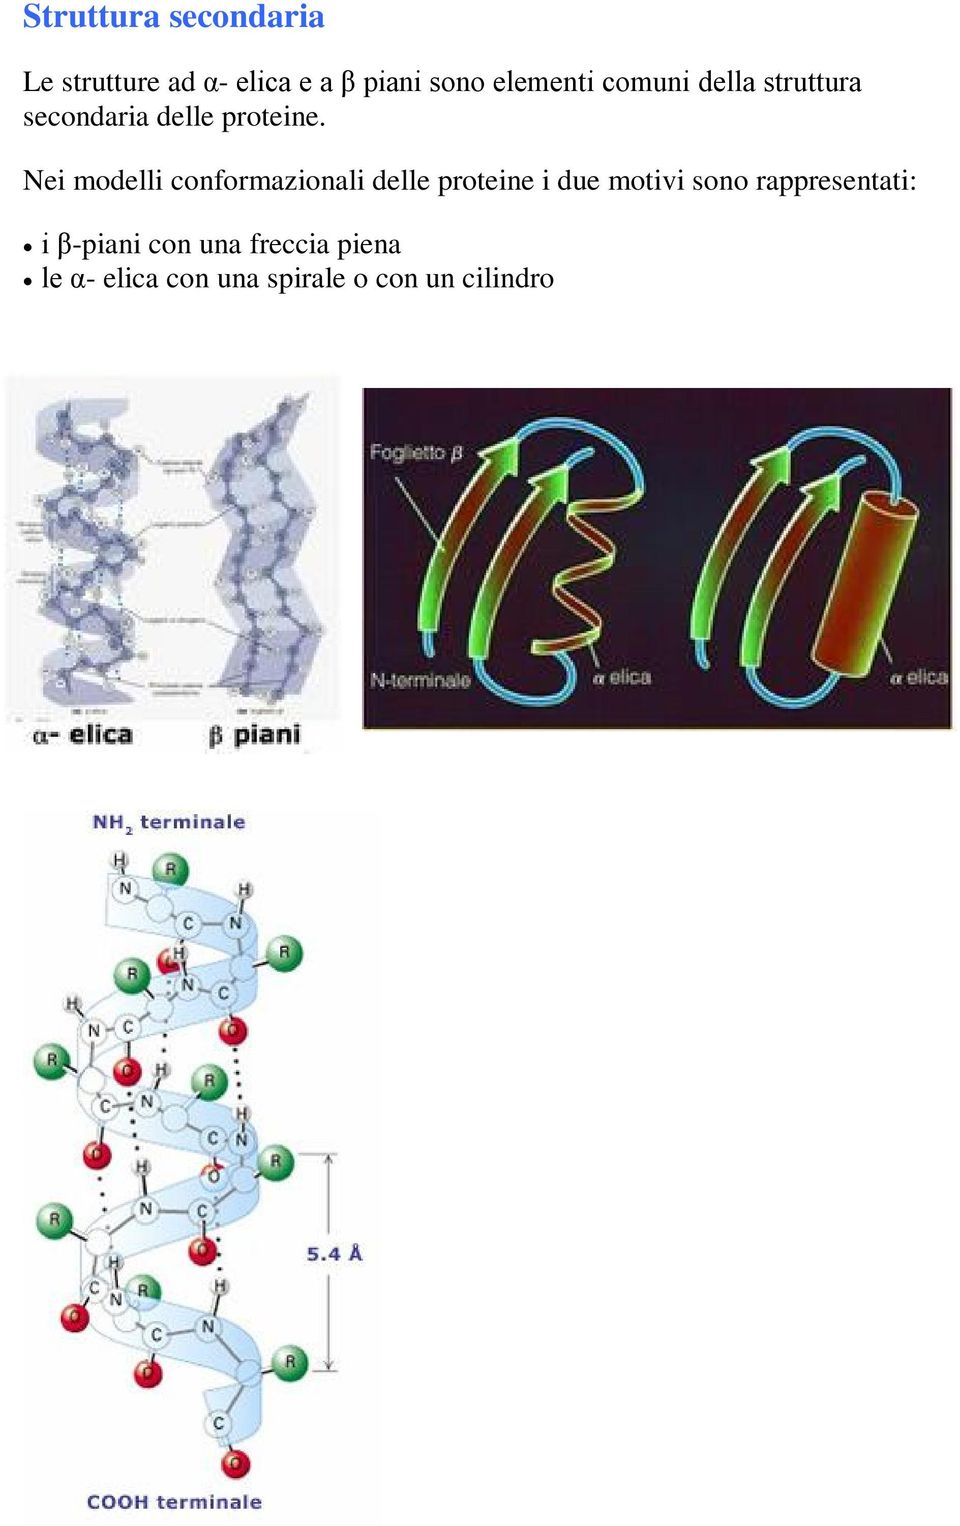 Nei modelli conformazionali delle proteine i due motivi sono